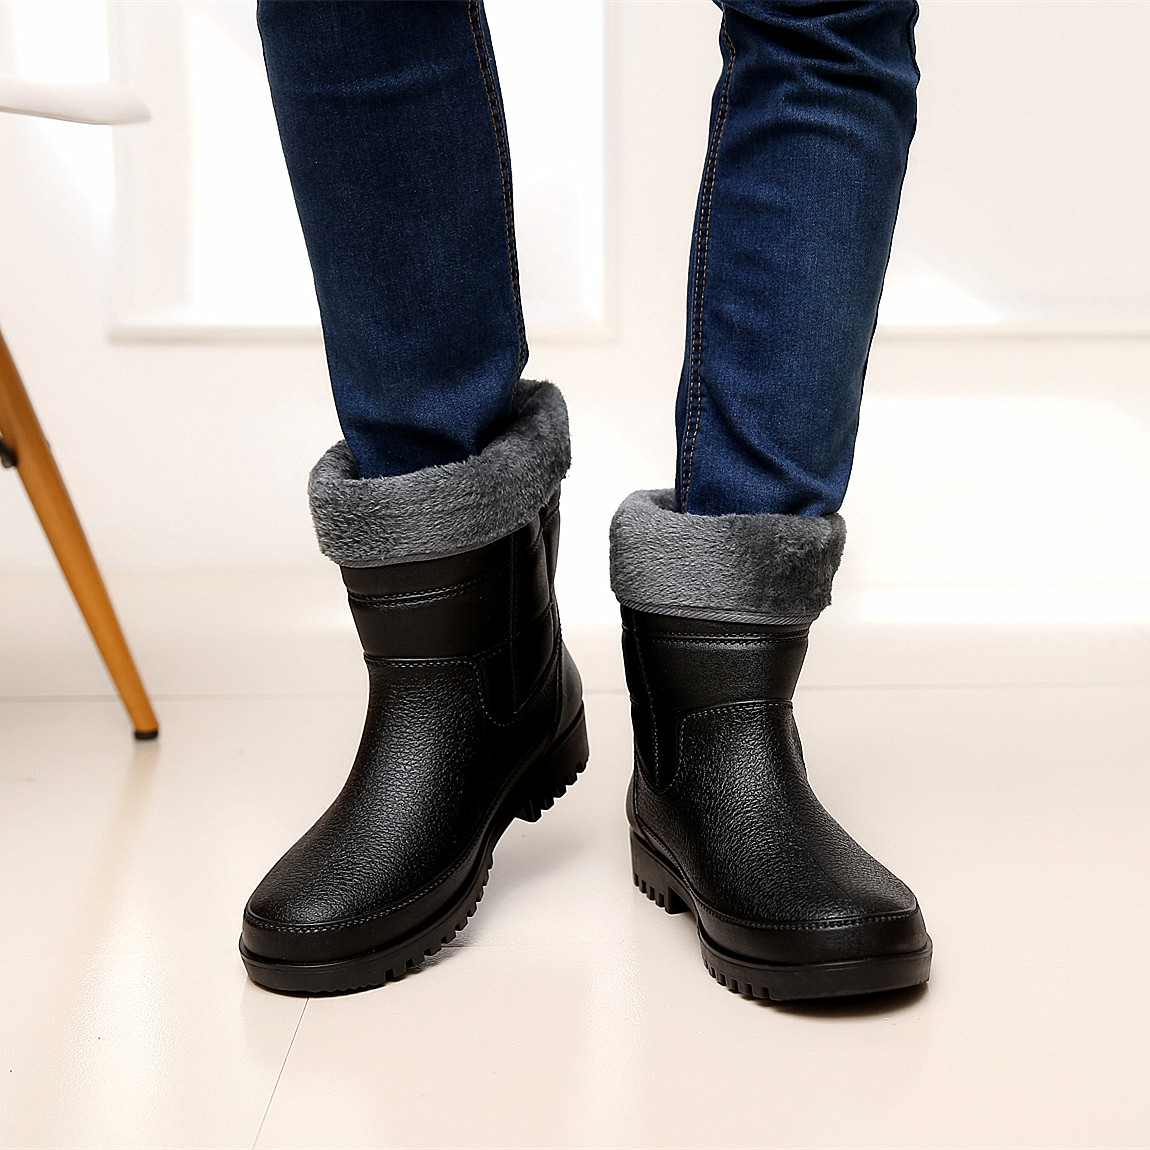 Chaussures - bottes caoutchouc homme 100KMPF pour hiver - semelle plastique - Ref 960654 Image 5